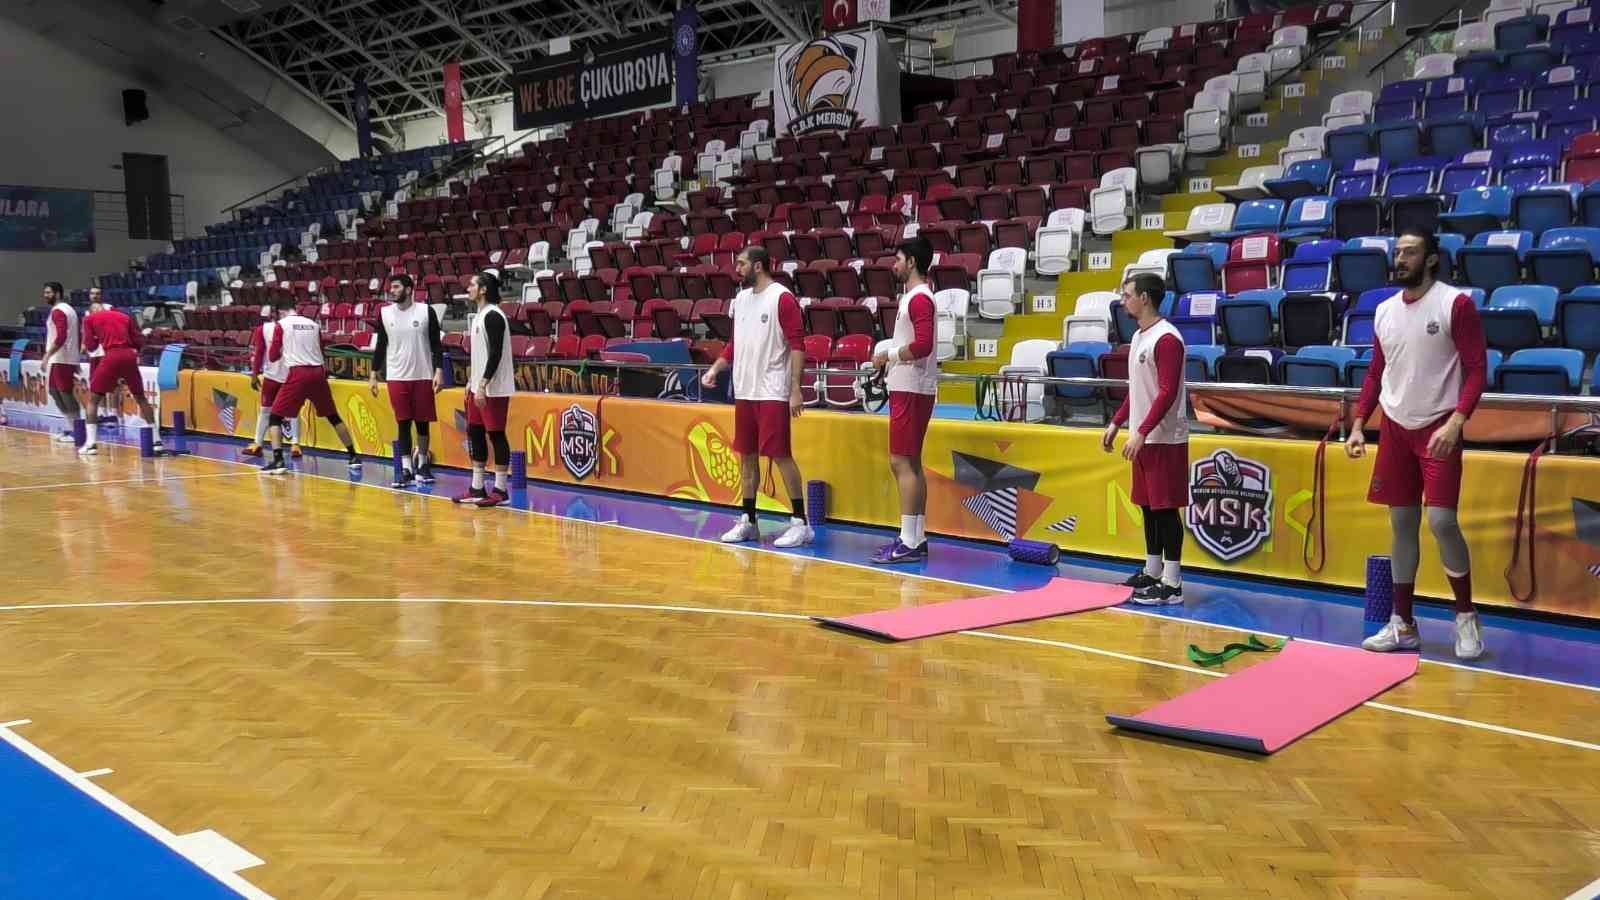 Büyükşehir MSK Erkek Basketbol Takımında moraller yerinde #mersin